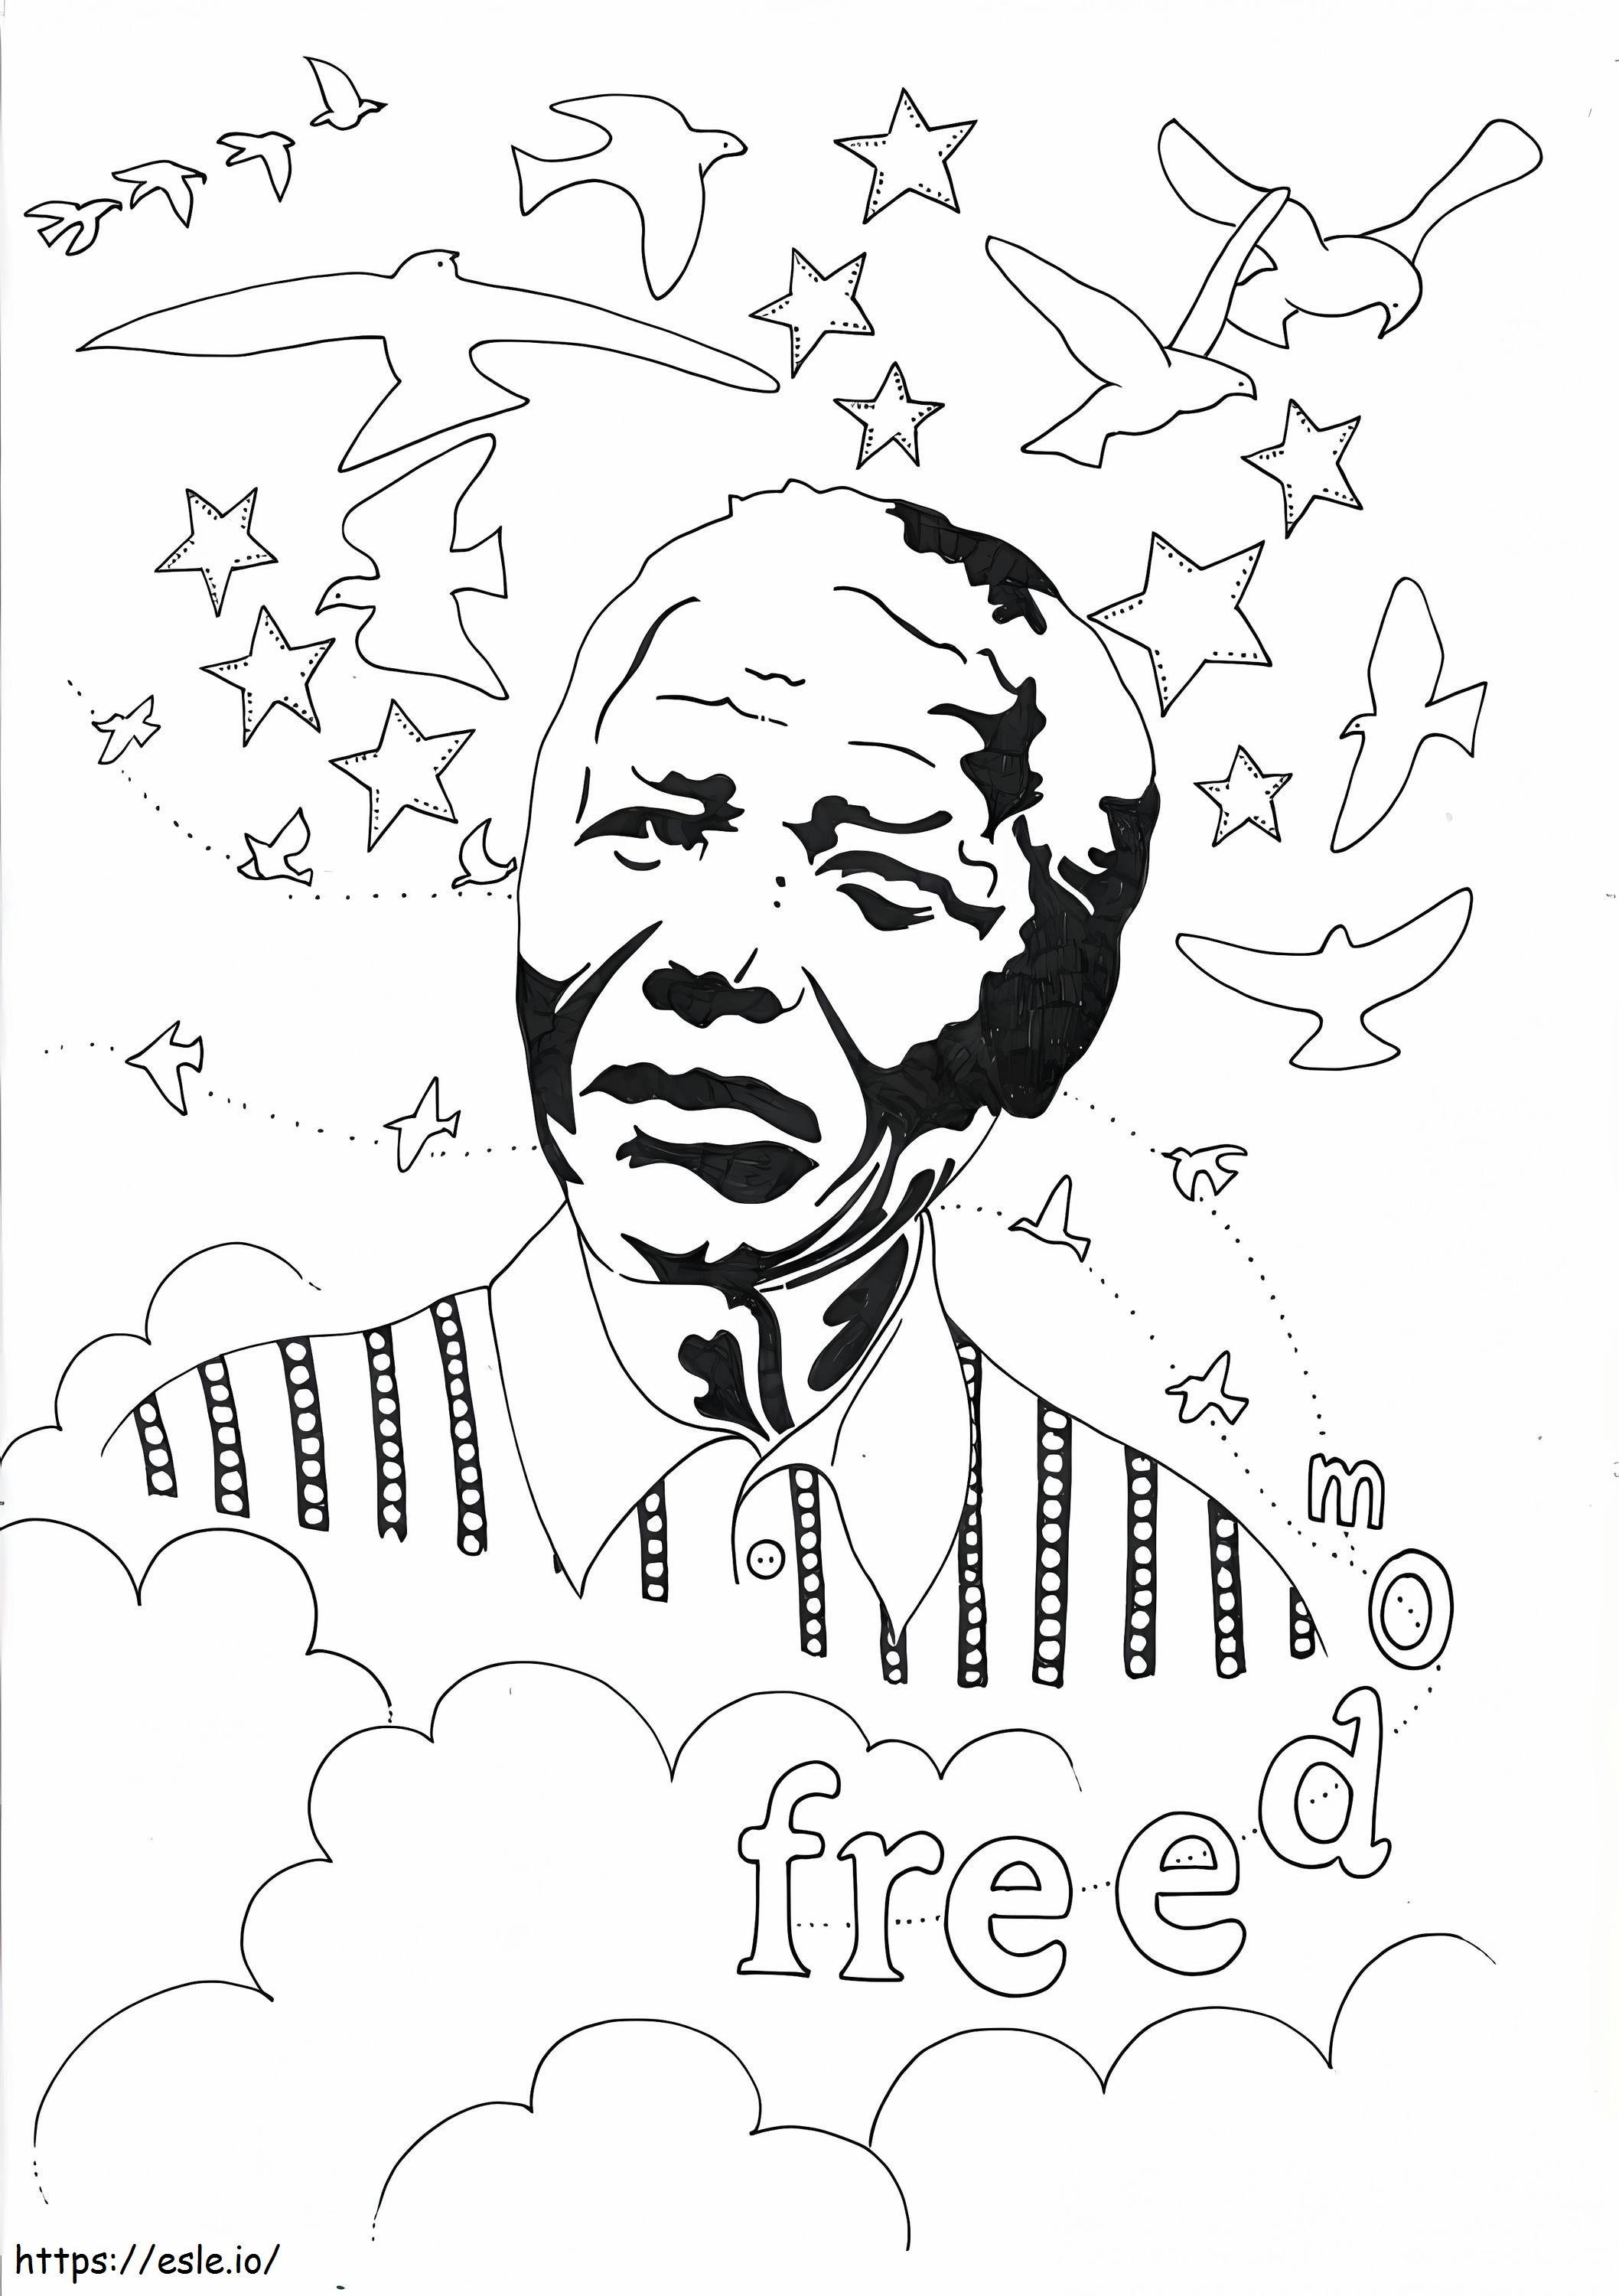 Nelson Mandela1 kleurplaat kleurplaat